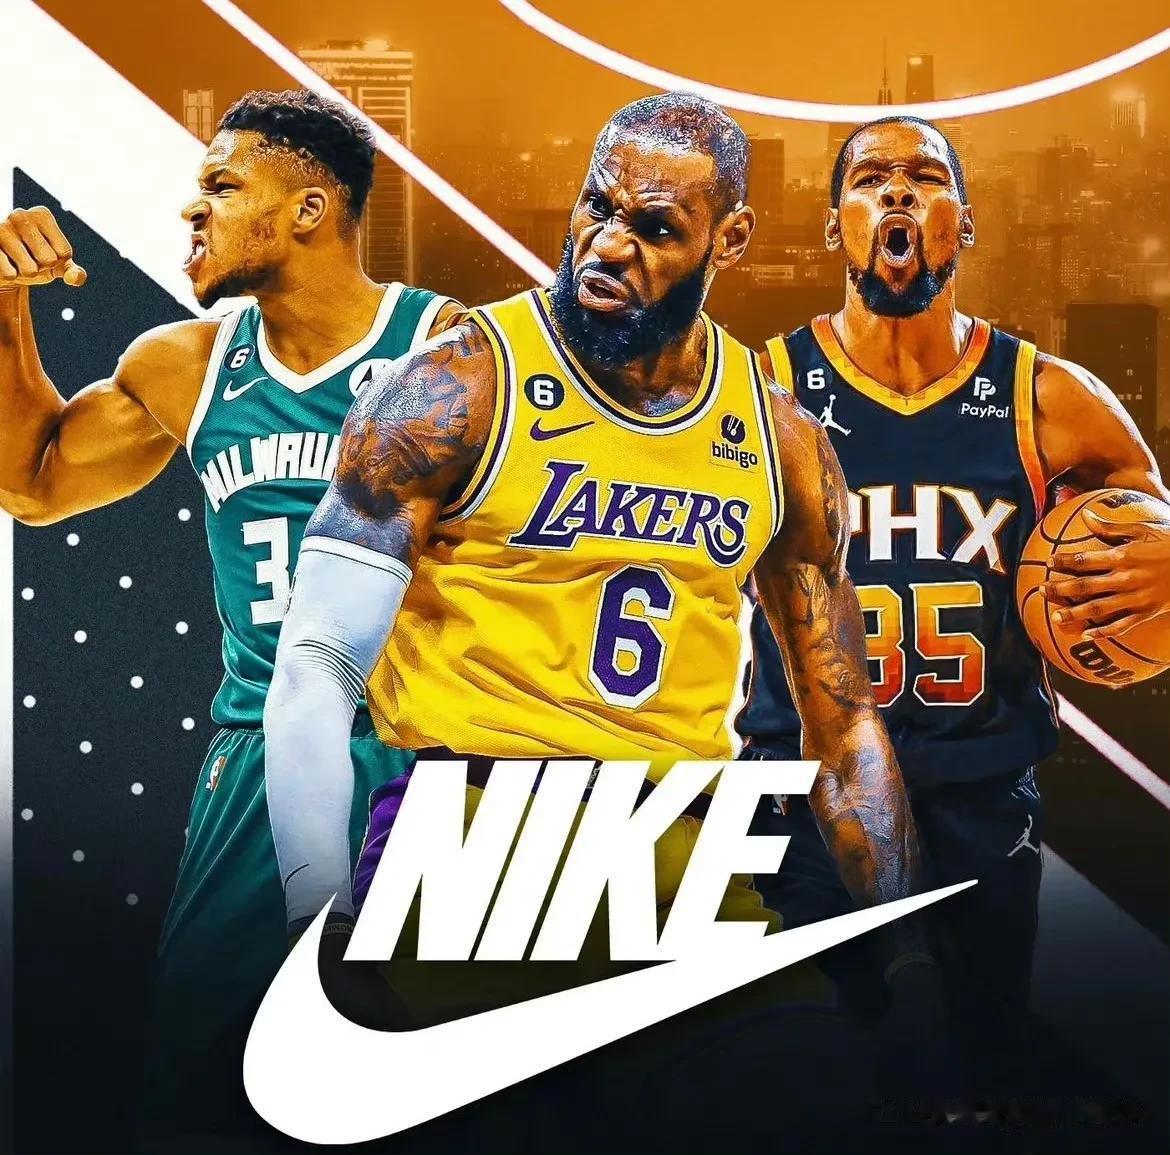 在NBA，各大球鞋品牌的三位代表球员一览:

1、耐克:詹姆斯，杜兰特，字母哥
(1)